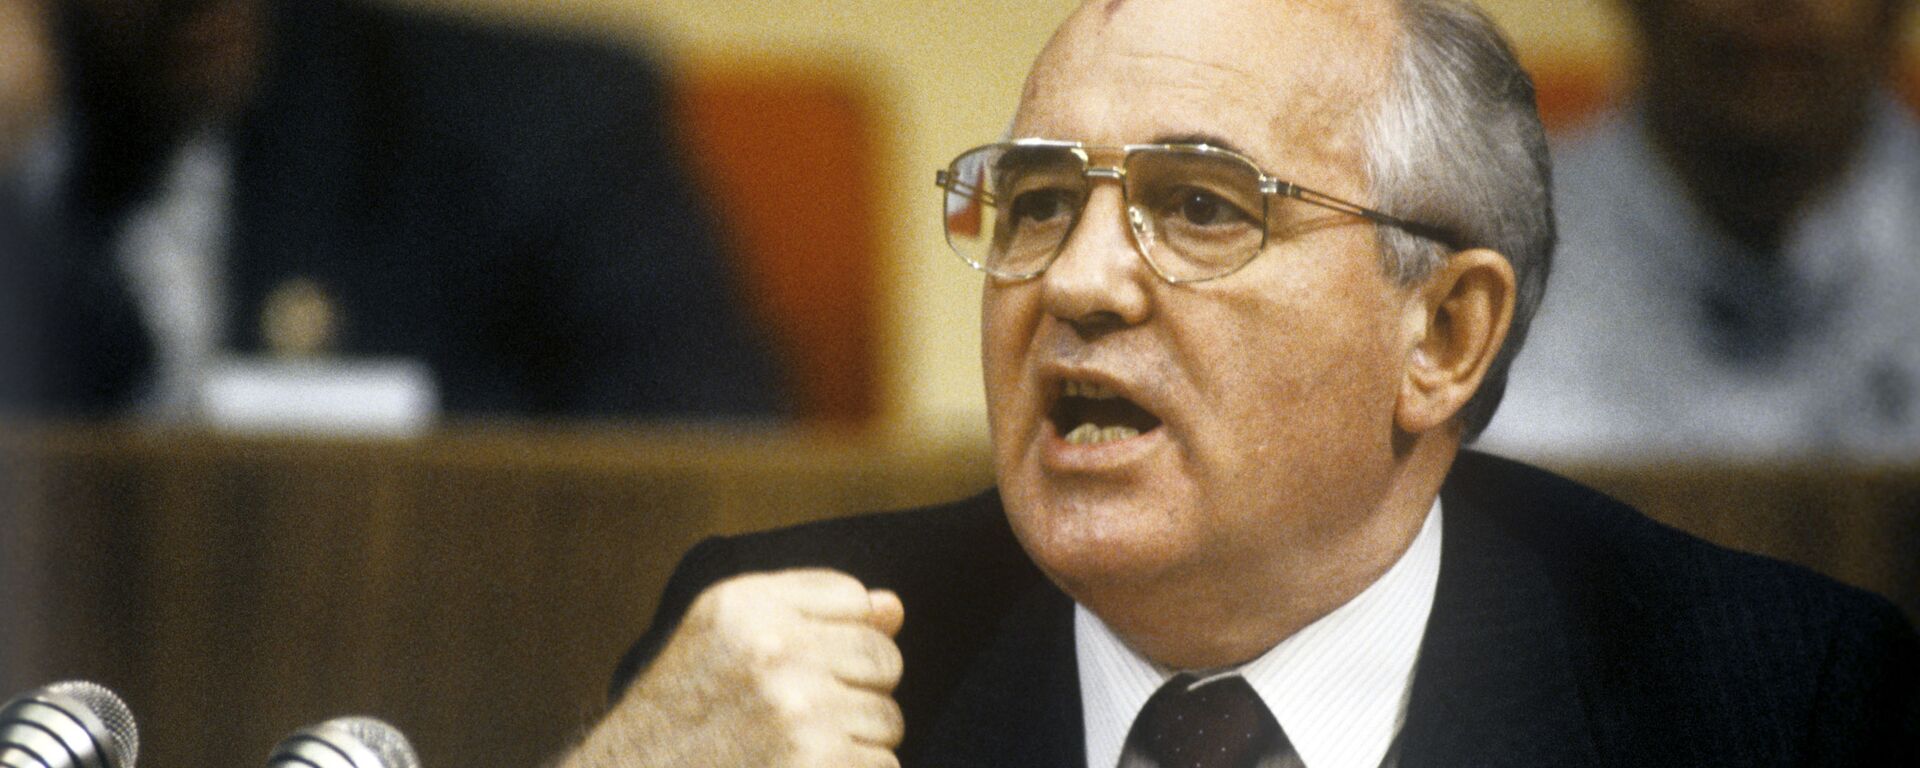 El presidente de la URSS, Mijaíl Gorbachov, pronuncia un discurso - Sputnik Mundo, 1920, 02.03.2021